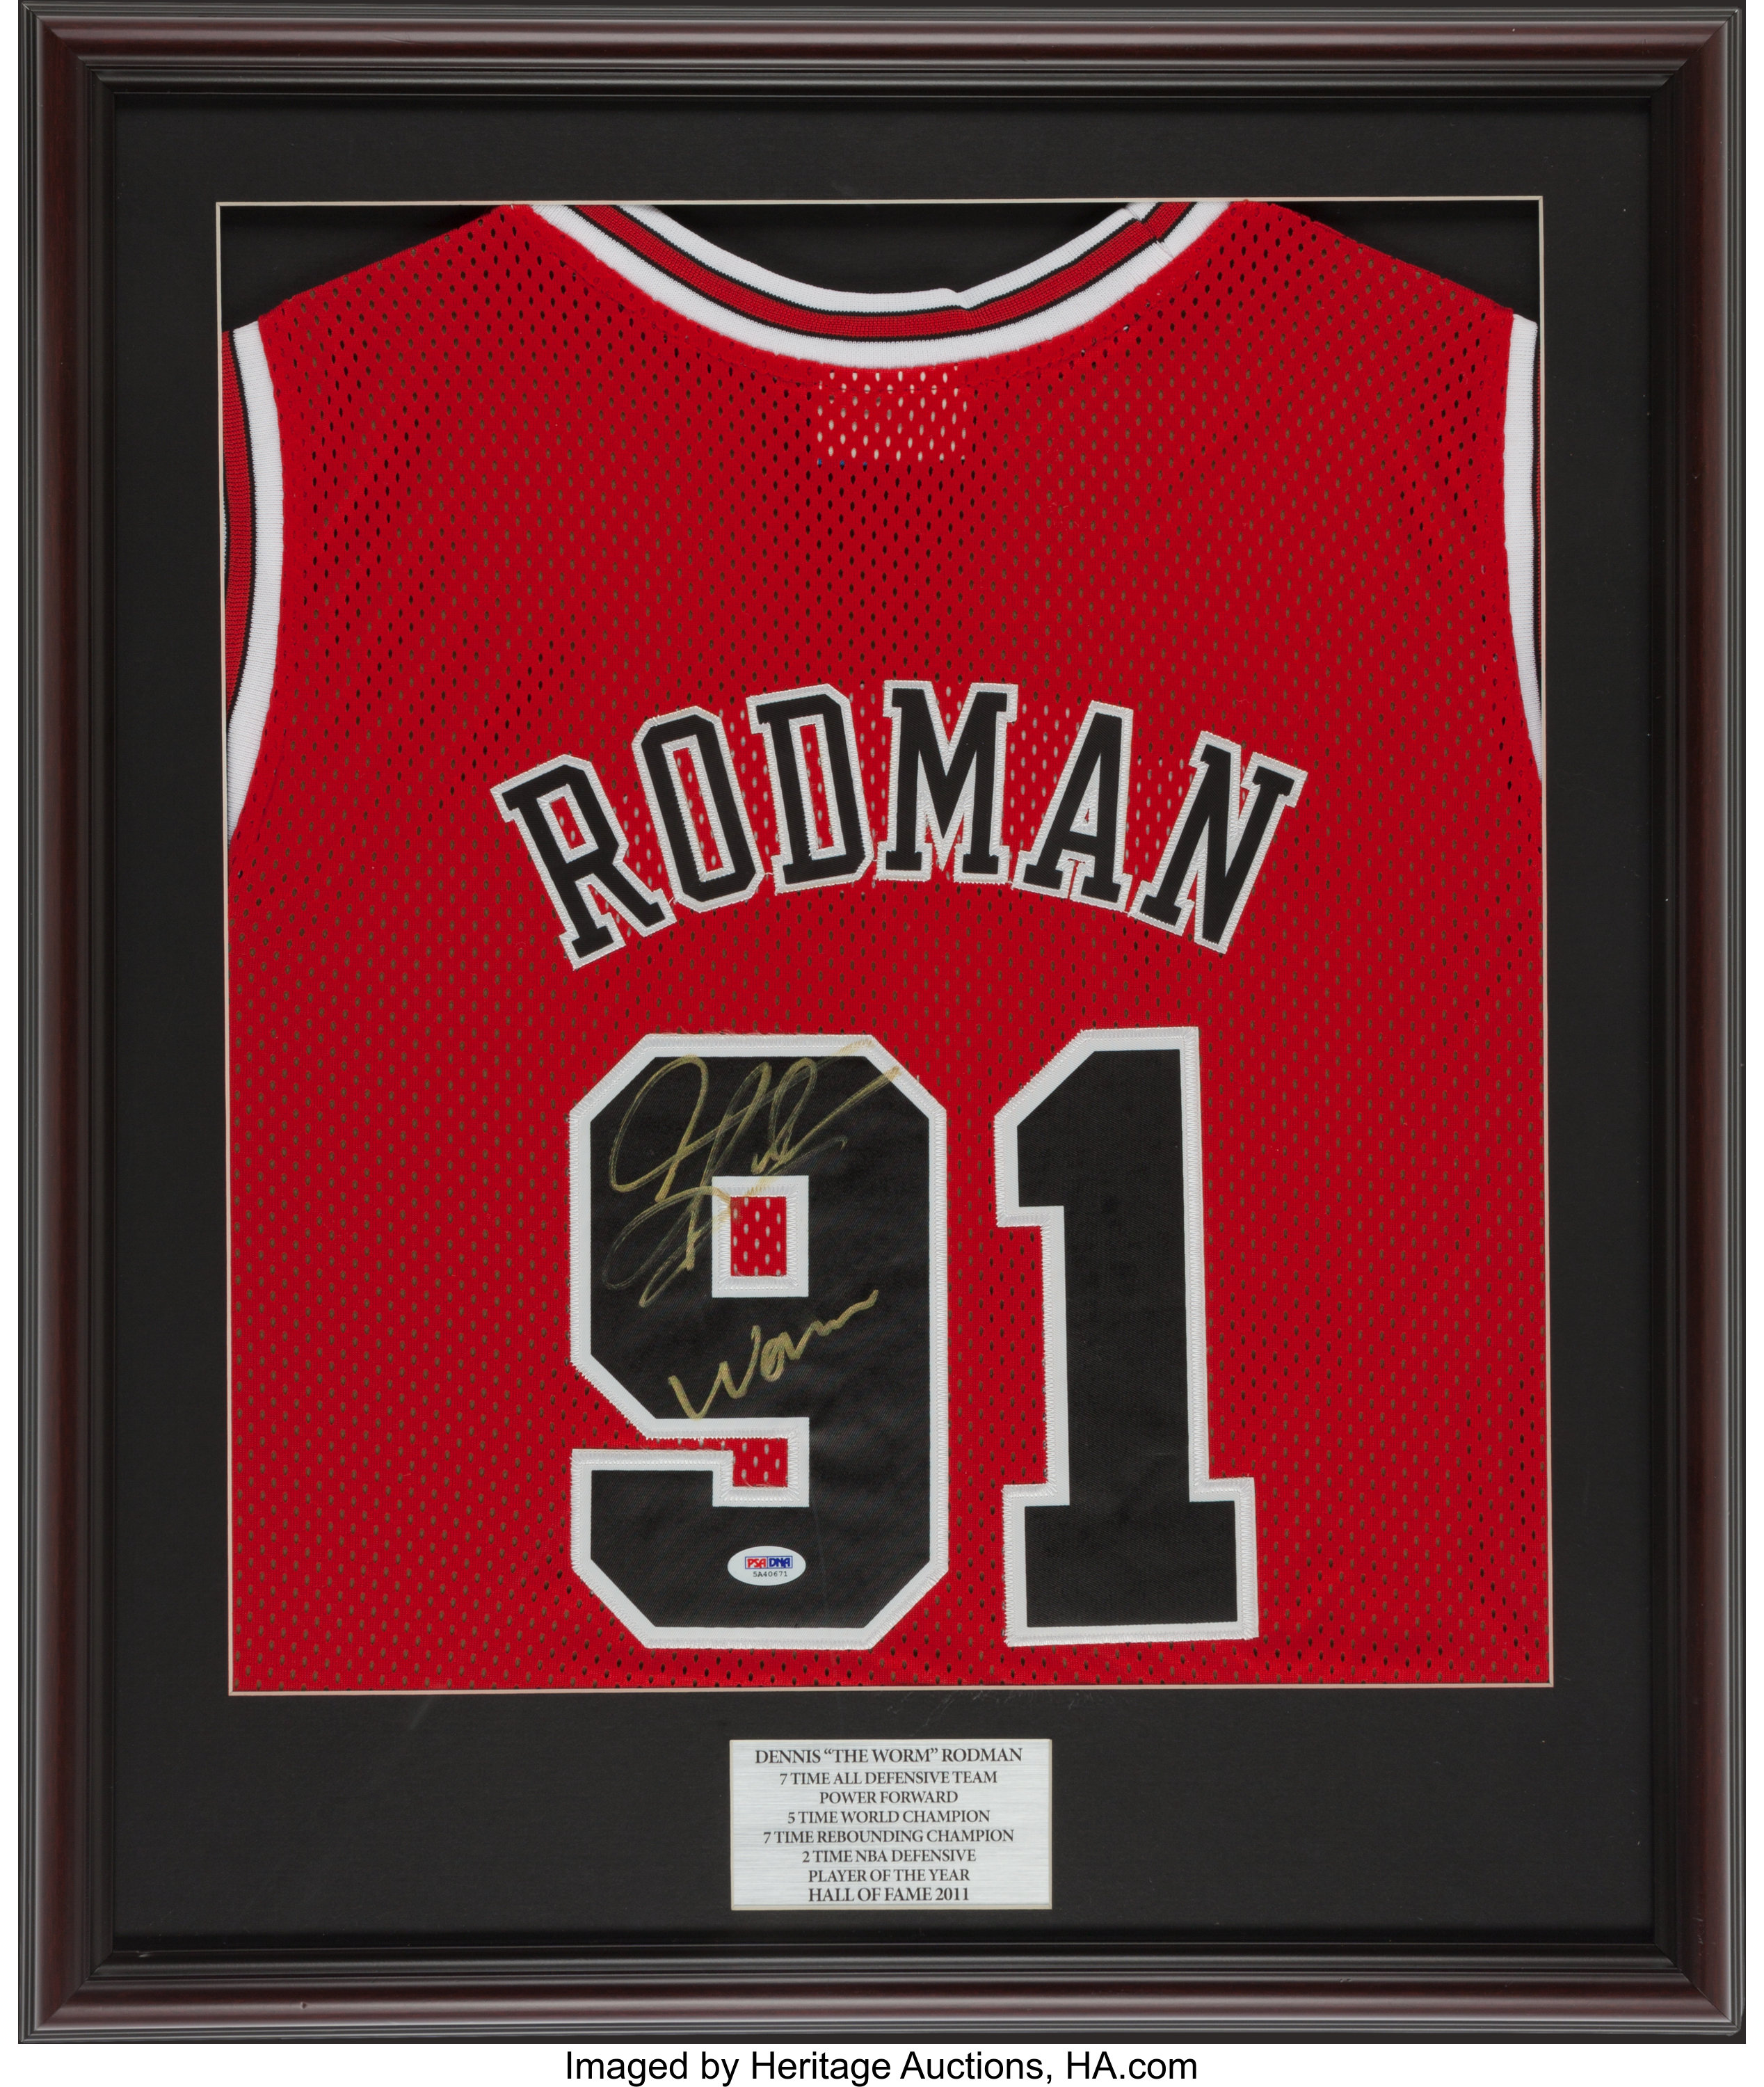 Dennis Rodman Hand Signed Jersey - Framed